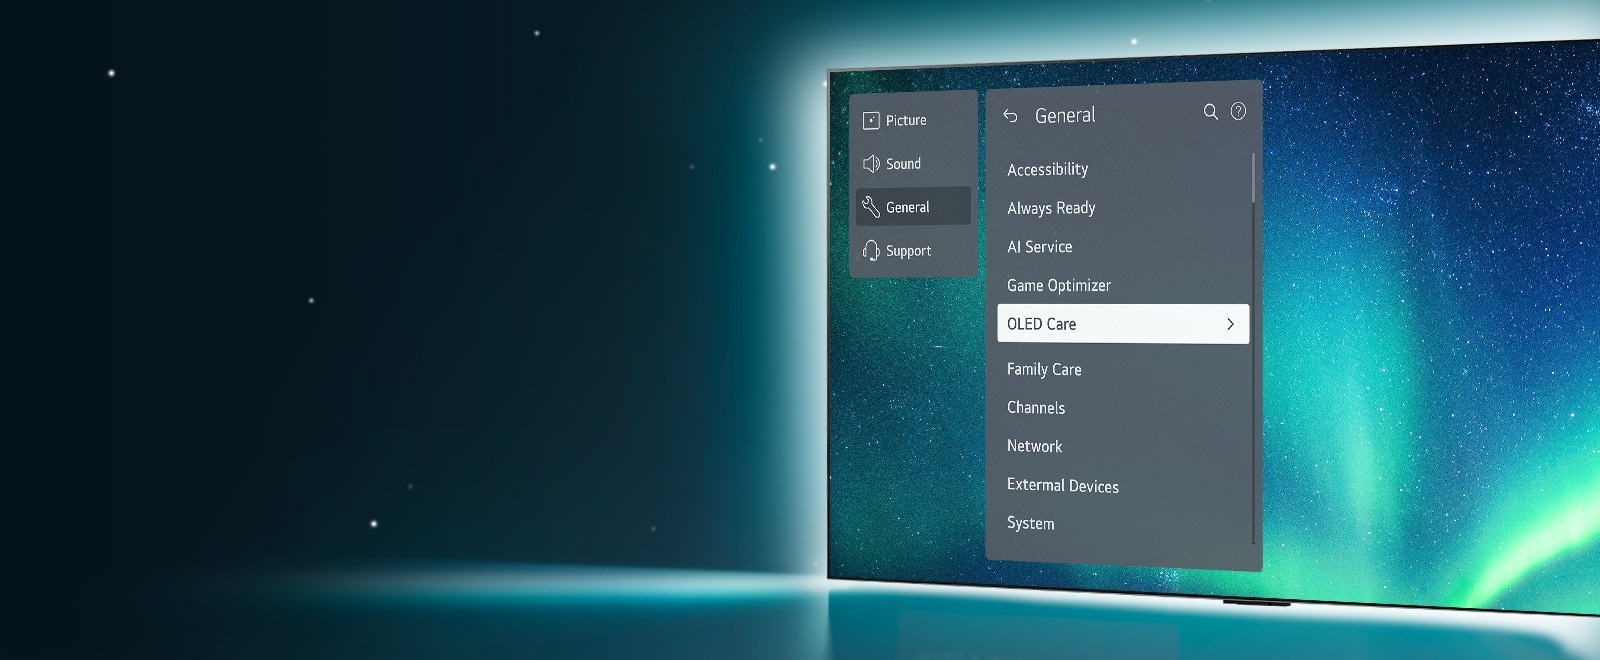 OLED TV staat aan de rechterzijde van het beeld. Het OLED Care-menu is geselecteerd in het ondersteuningsmenu op het scherm.